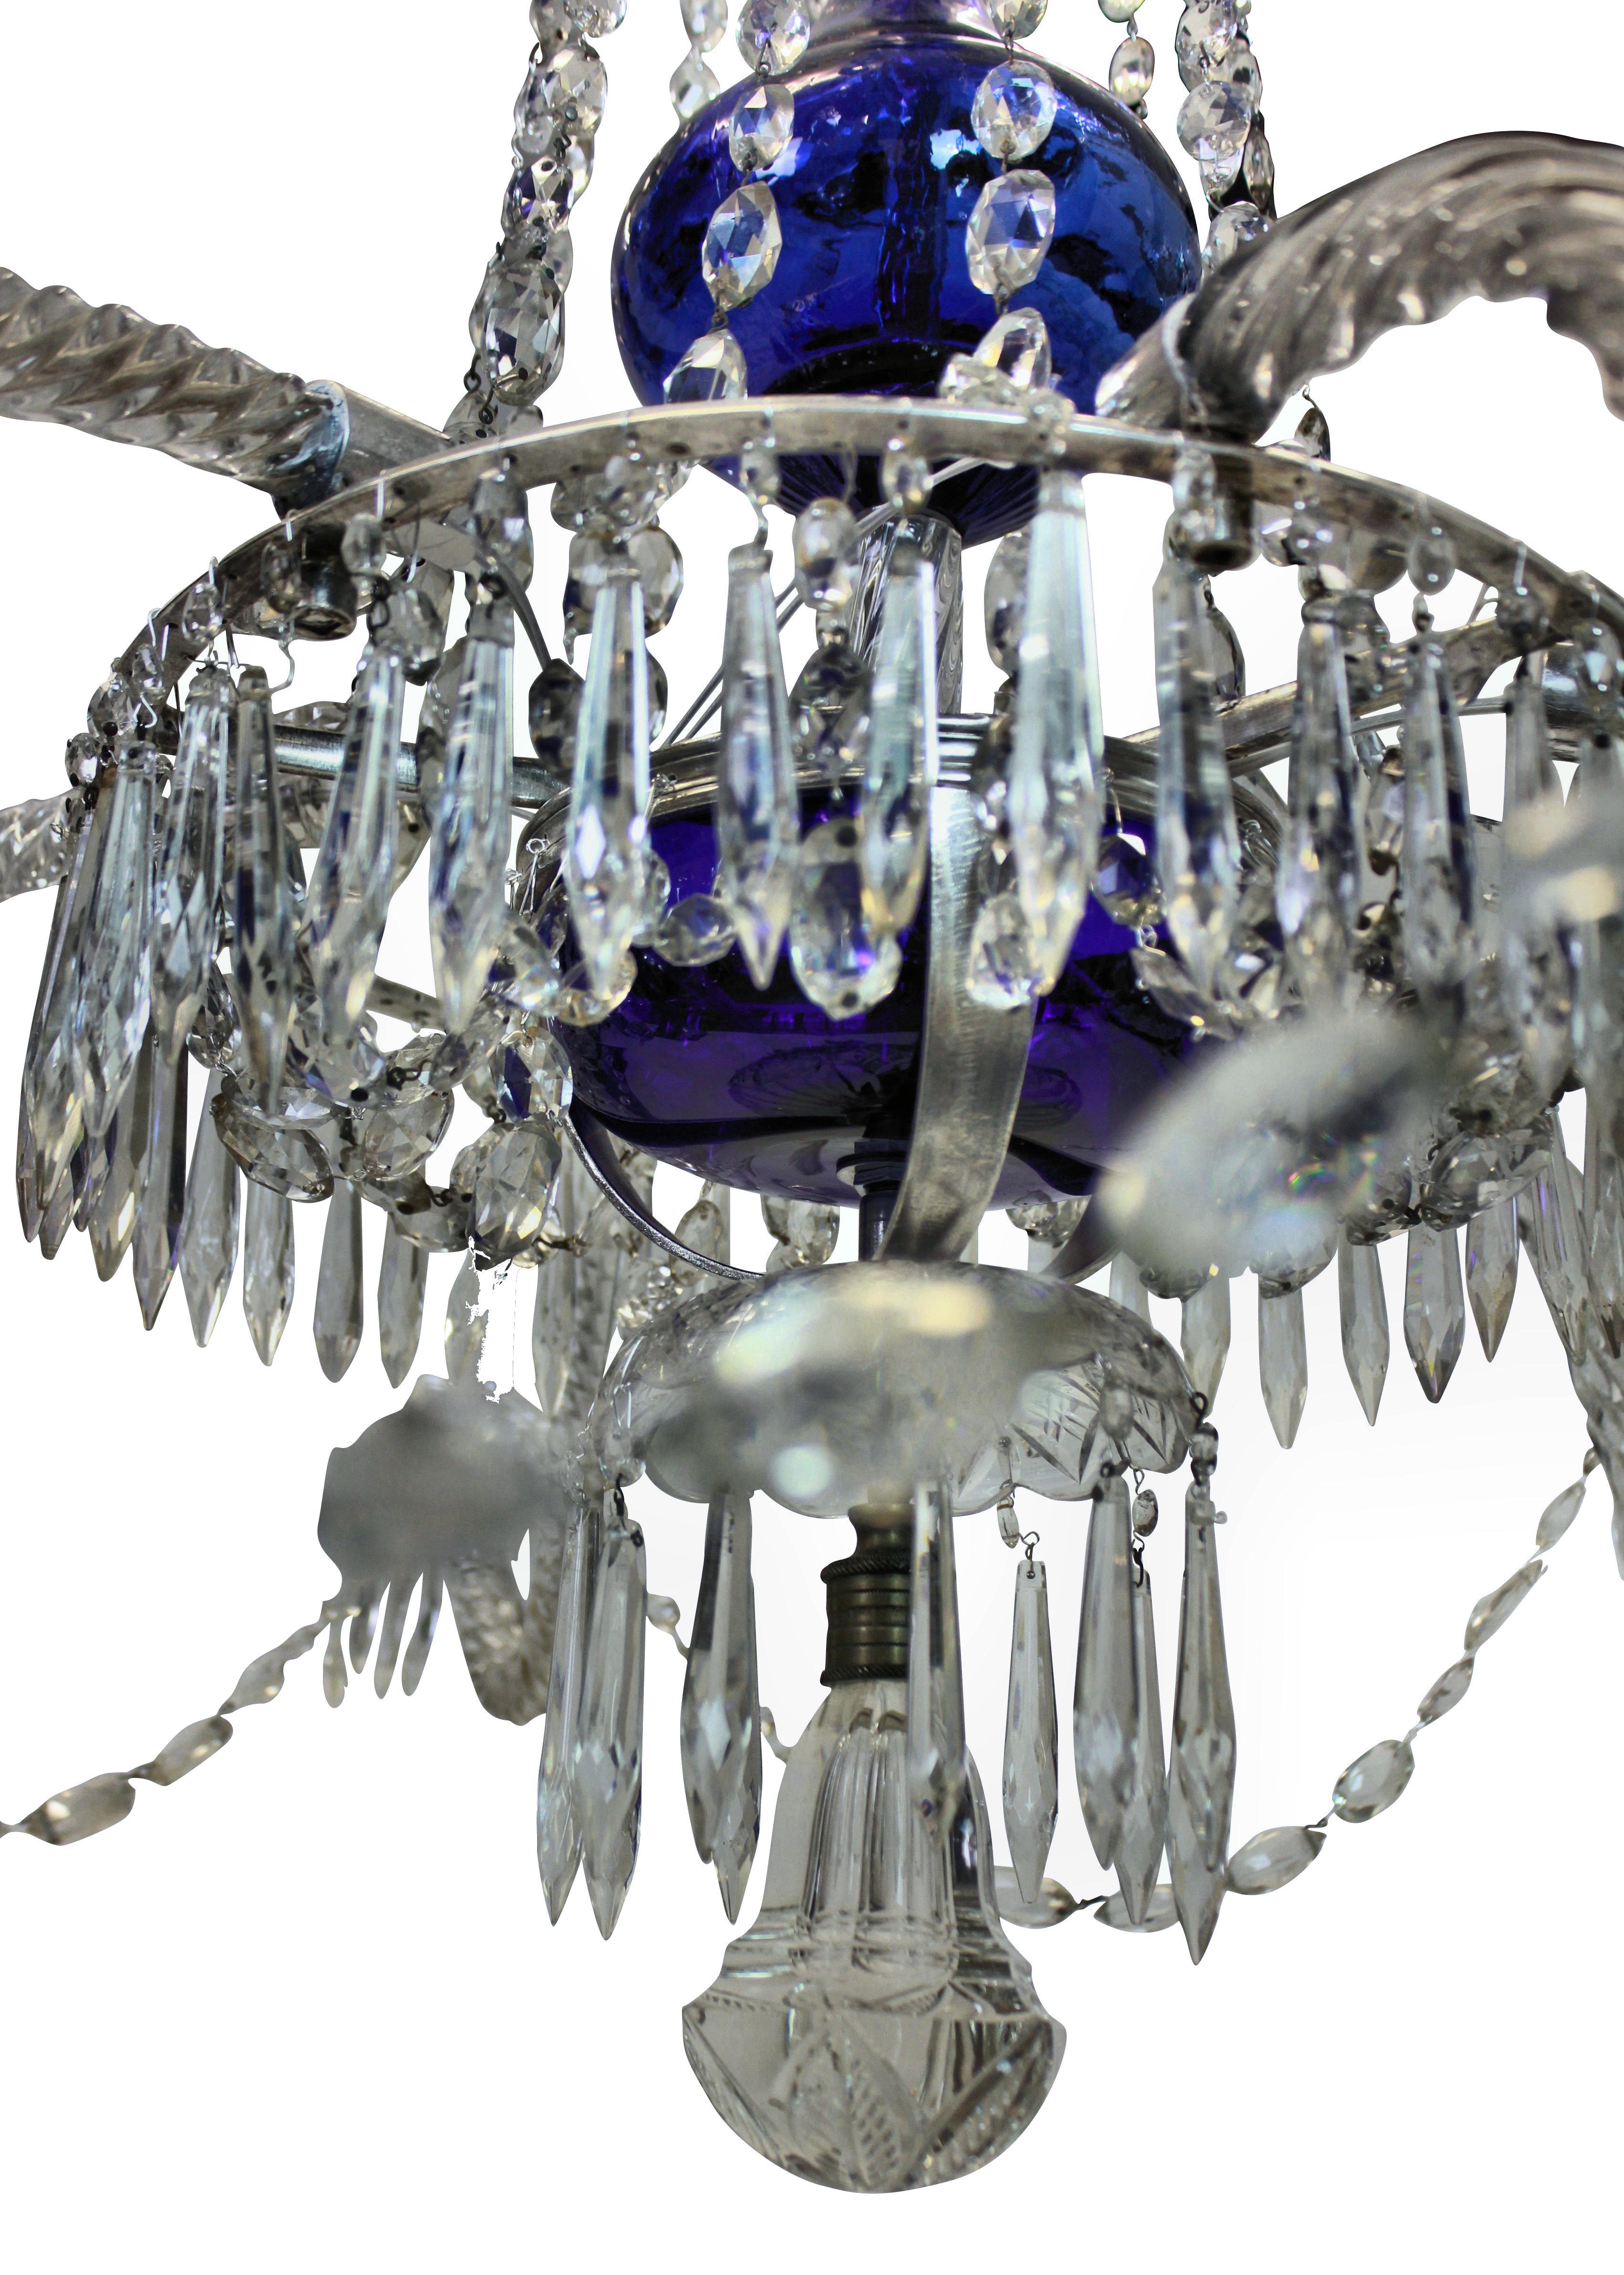 Ein feiner schwedischer Kronleuchter mit sechs Zweigen aus dem XIX. Jahrhundert, mit einem zentralen Stiel aus blauem Glas, einer gewölbten Krone aus blauem Glas an der Spitze und klaren, geschliffenen Glasverkleidungen, Armen und Anhängern. Die